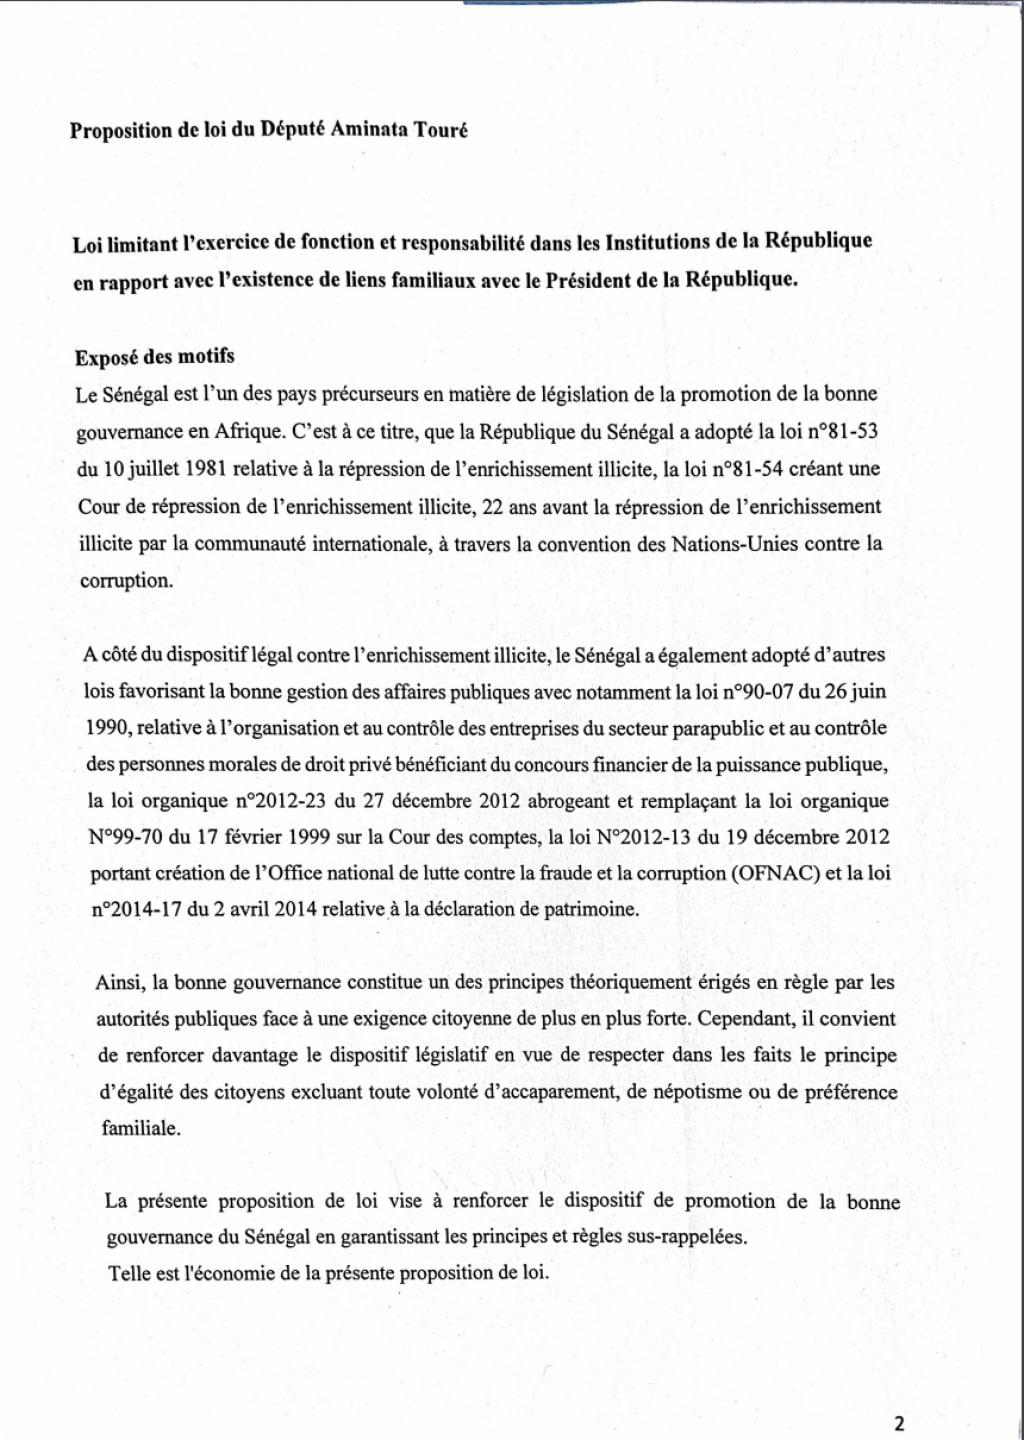 Mimi Touré propose une loi contre le népotisme